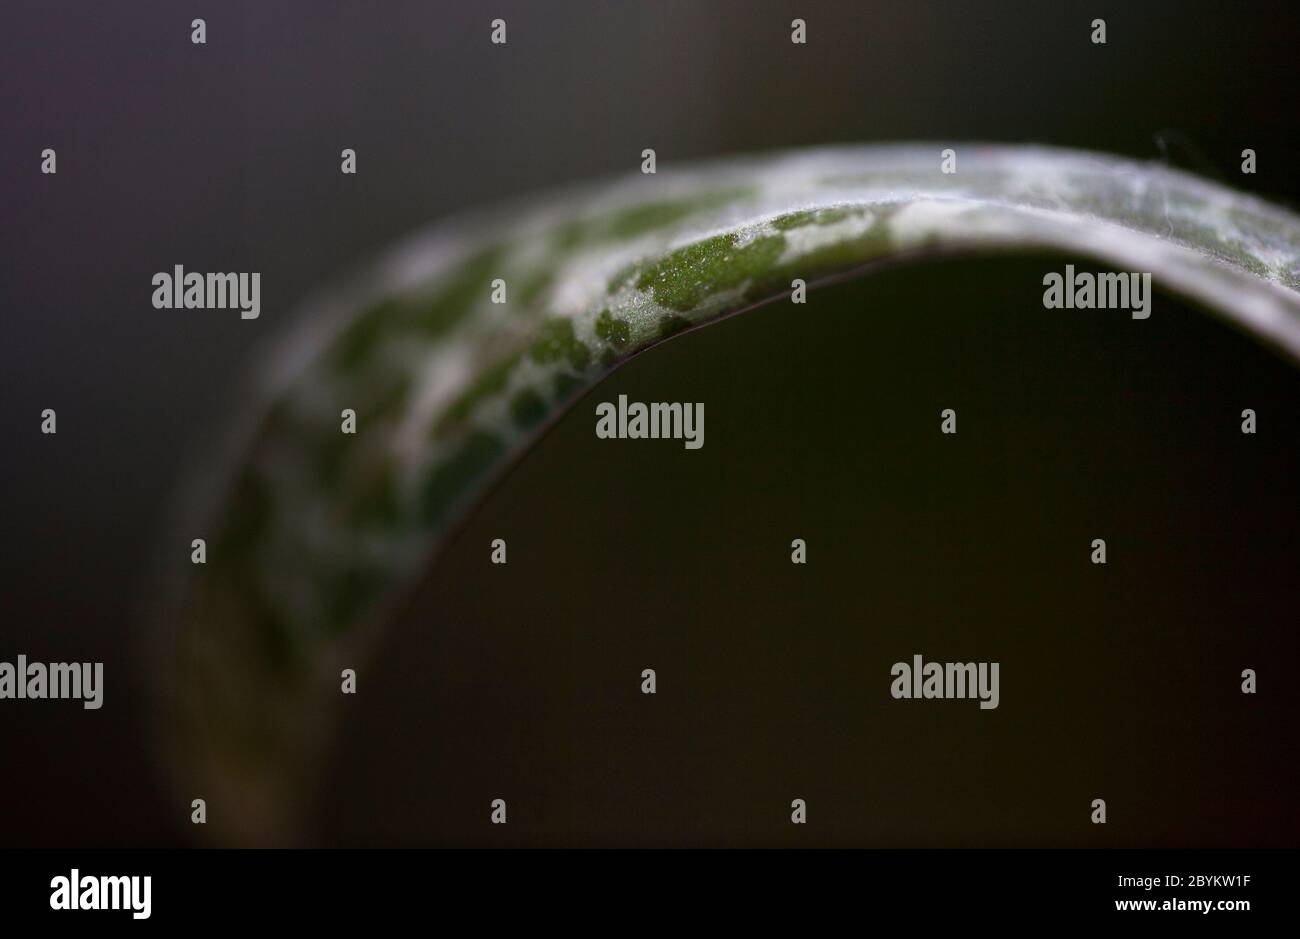 Gros plan d'un calmar argenté, ledebouria socialis, plante vivace, montrant son motif foliaire distinctif. Londres, Angleterre Royaume-Uni Banque D'Images